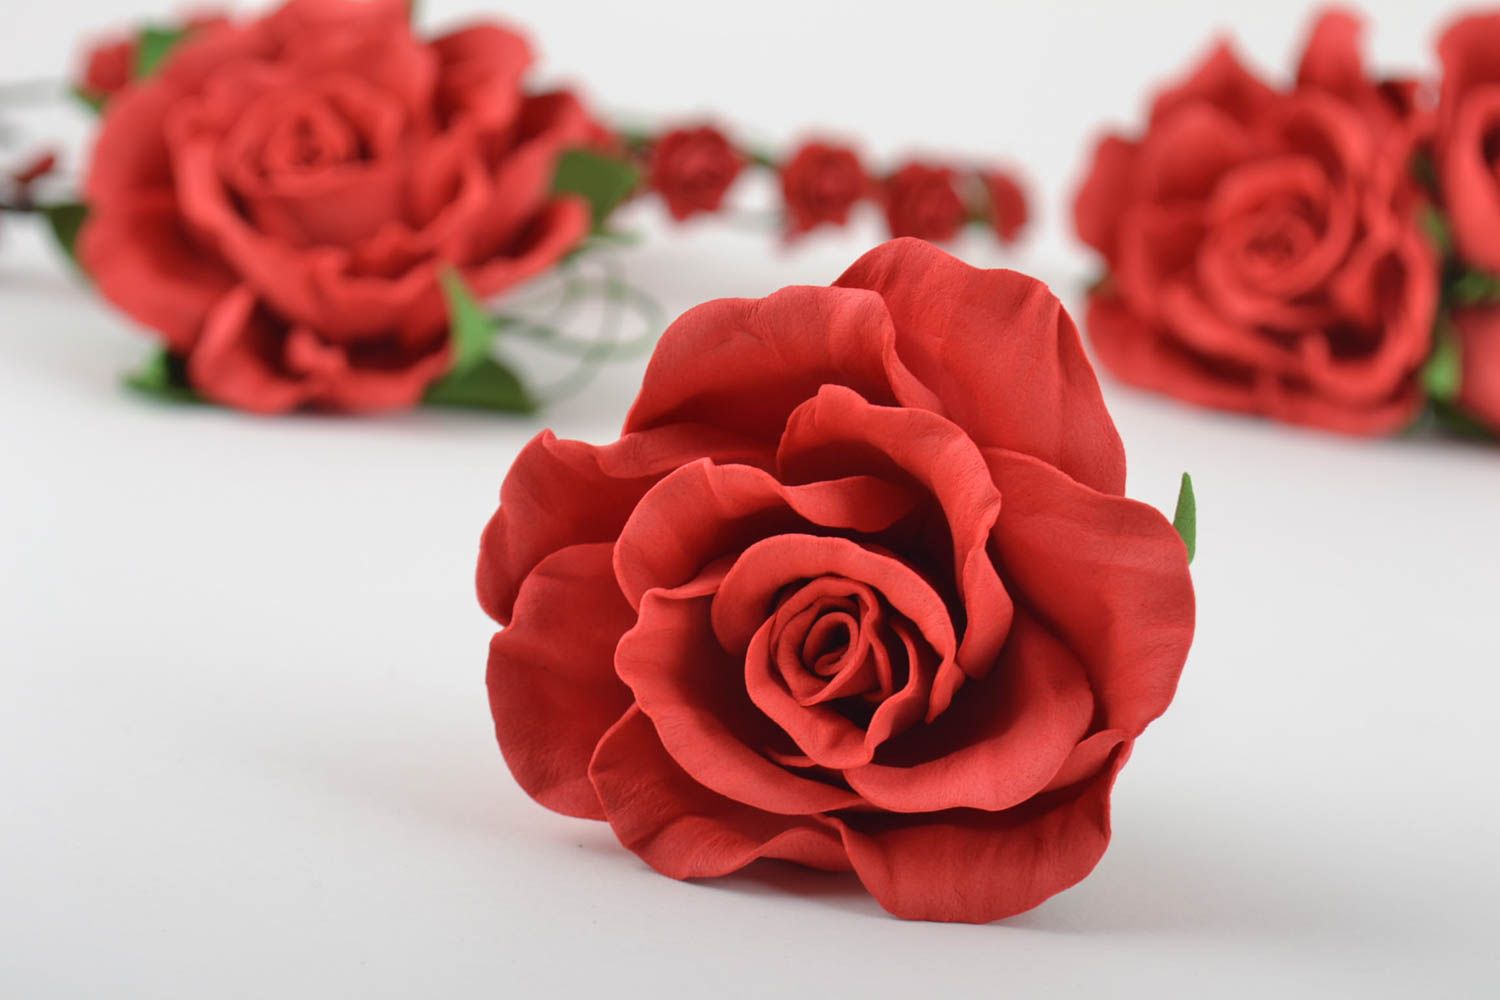 Шпилька из фоамирана с крупным цветком розы красная нарядная красивая хэнд мейд фото 1